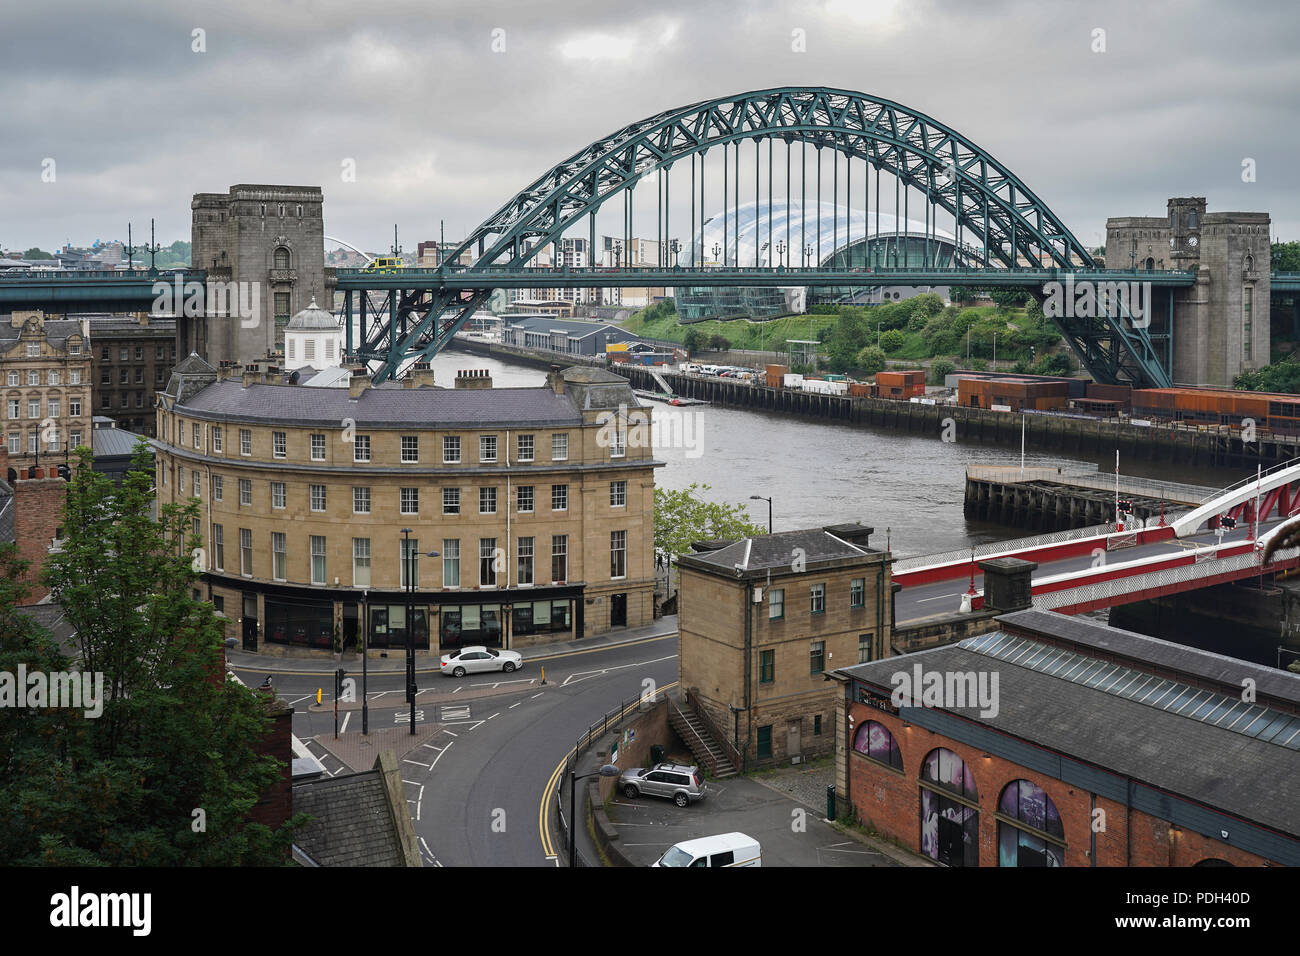 Une vue sur le pont tournant (à droite au premier plan) et le Tyne Bridge sur la rivière Tyne dans la ville de Newcastle, Royaume-Uni. Date de la photo : le lundi 11 juin 2018. Banque D'Images